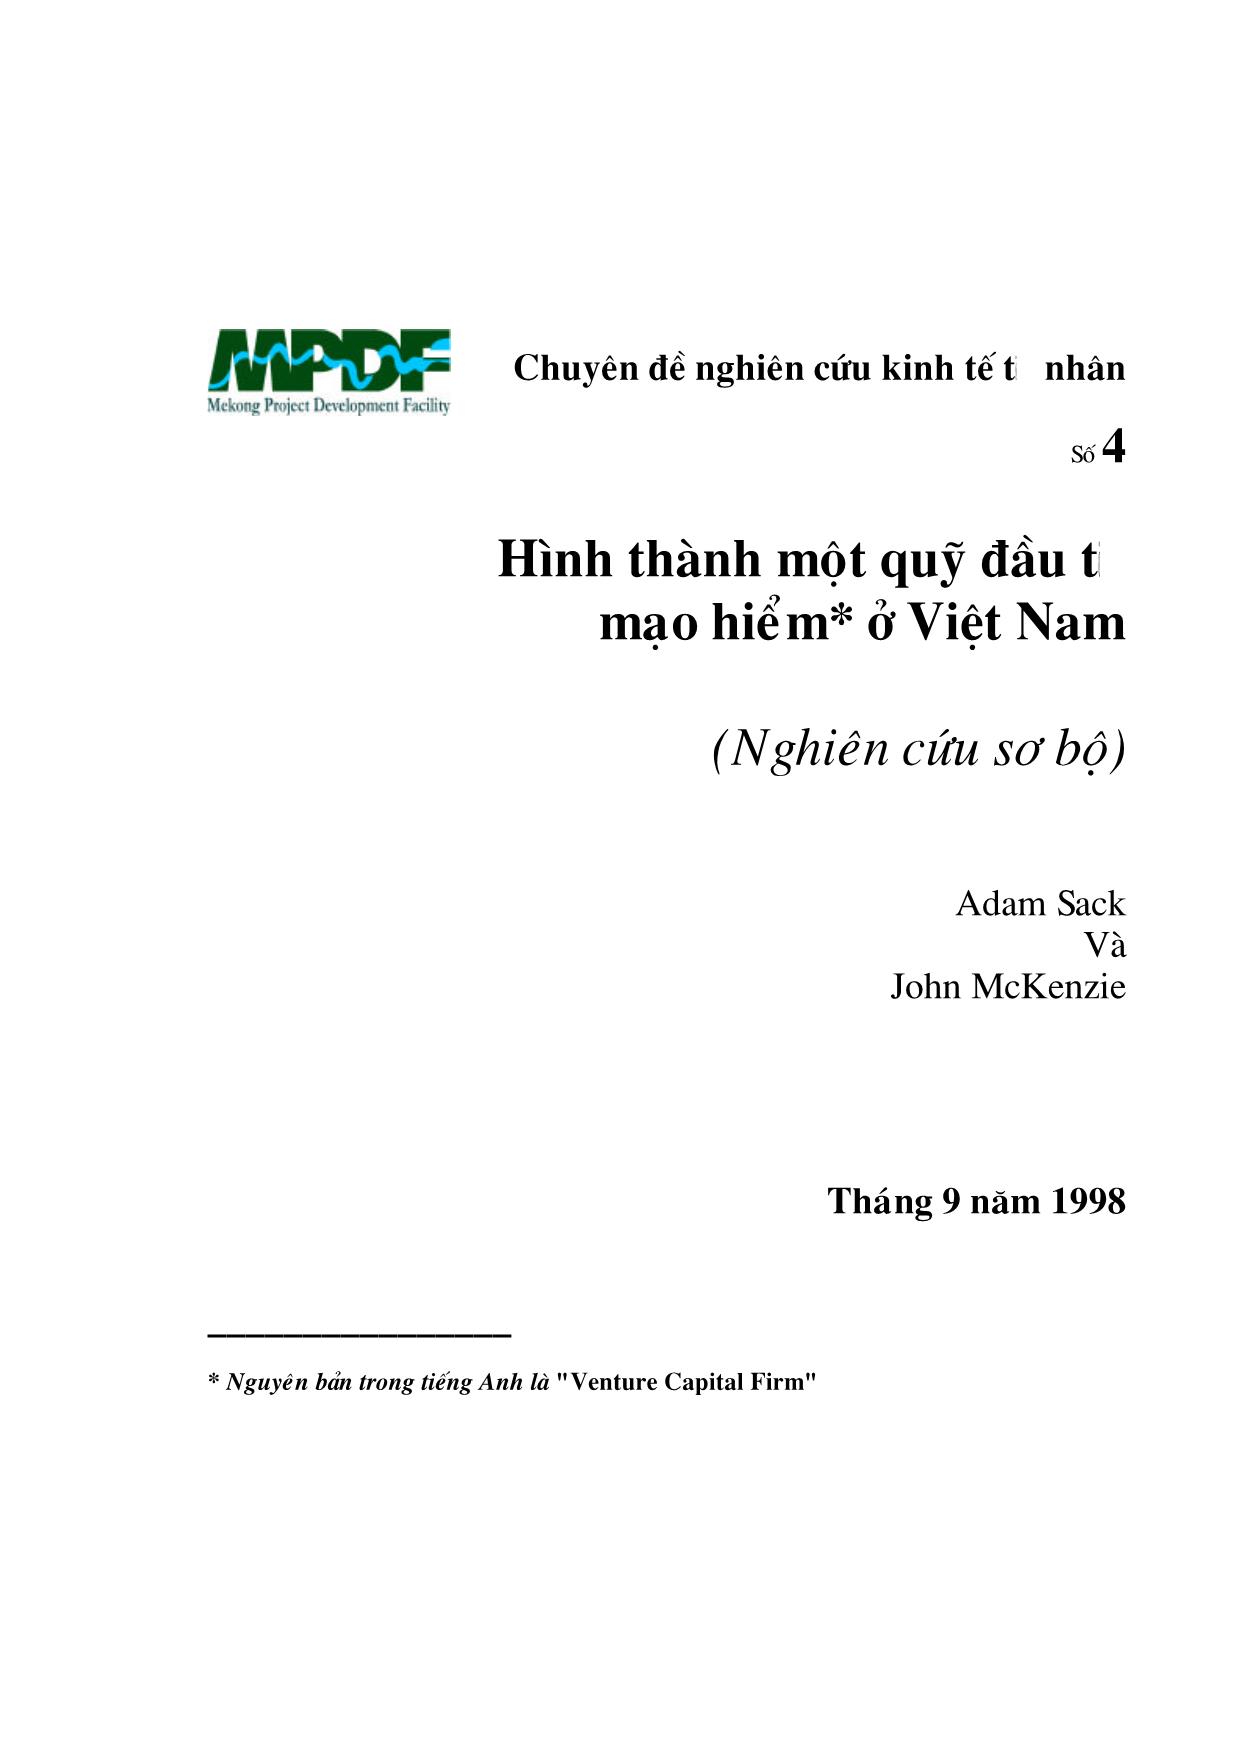 Chuyên đề Hình thành một quỹ đầu tư mạo hiểm ở Việt Nam trang 1